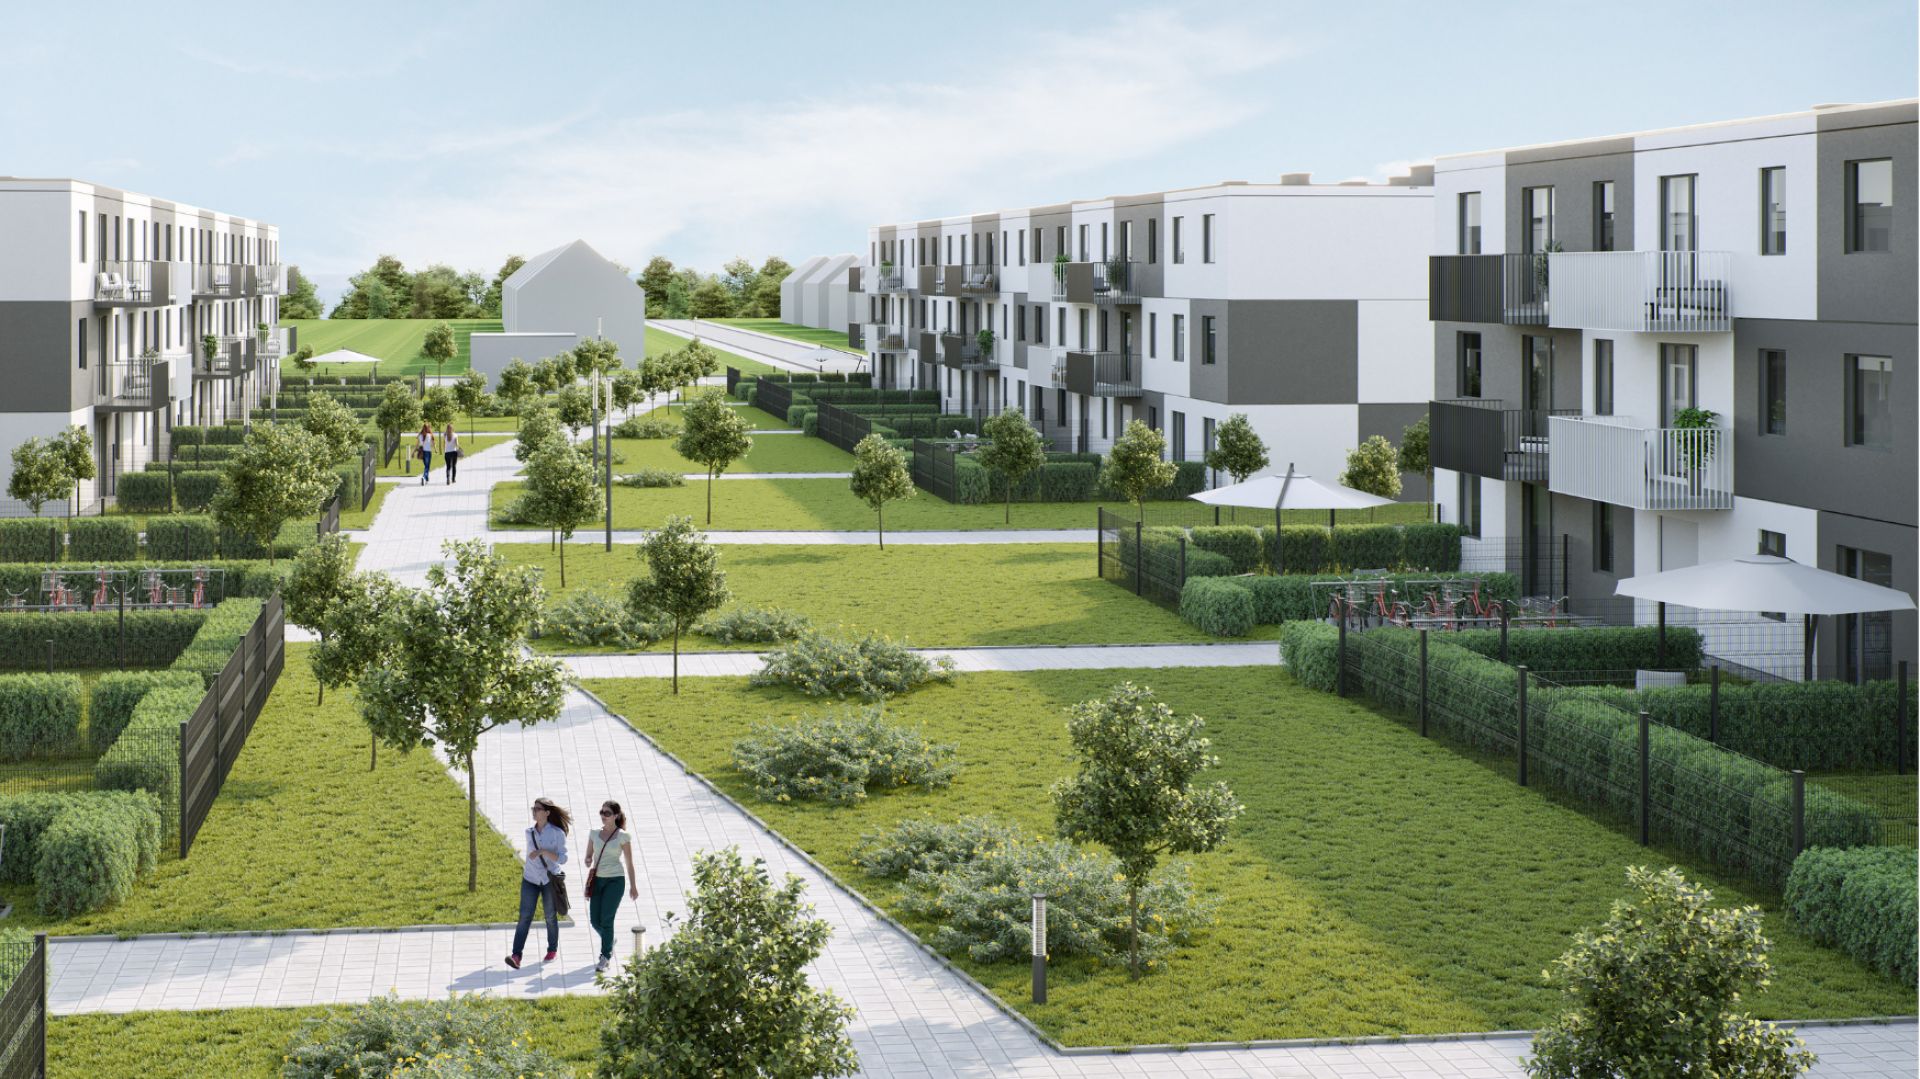 Polacy chcą mieszkać w pobliżu zieleni. Park podnosi wartość mieszkania o 15%